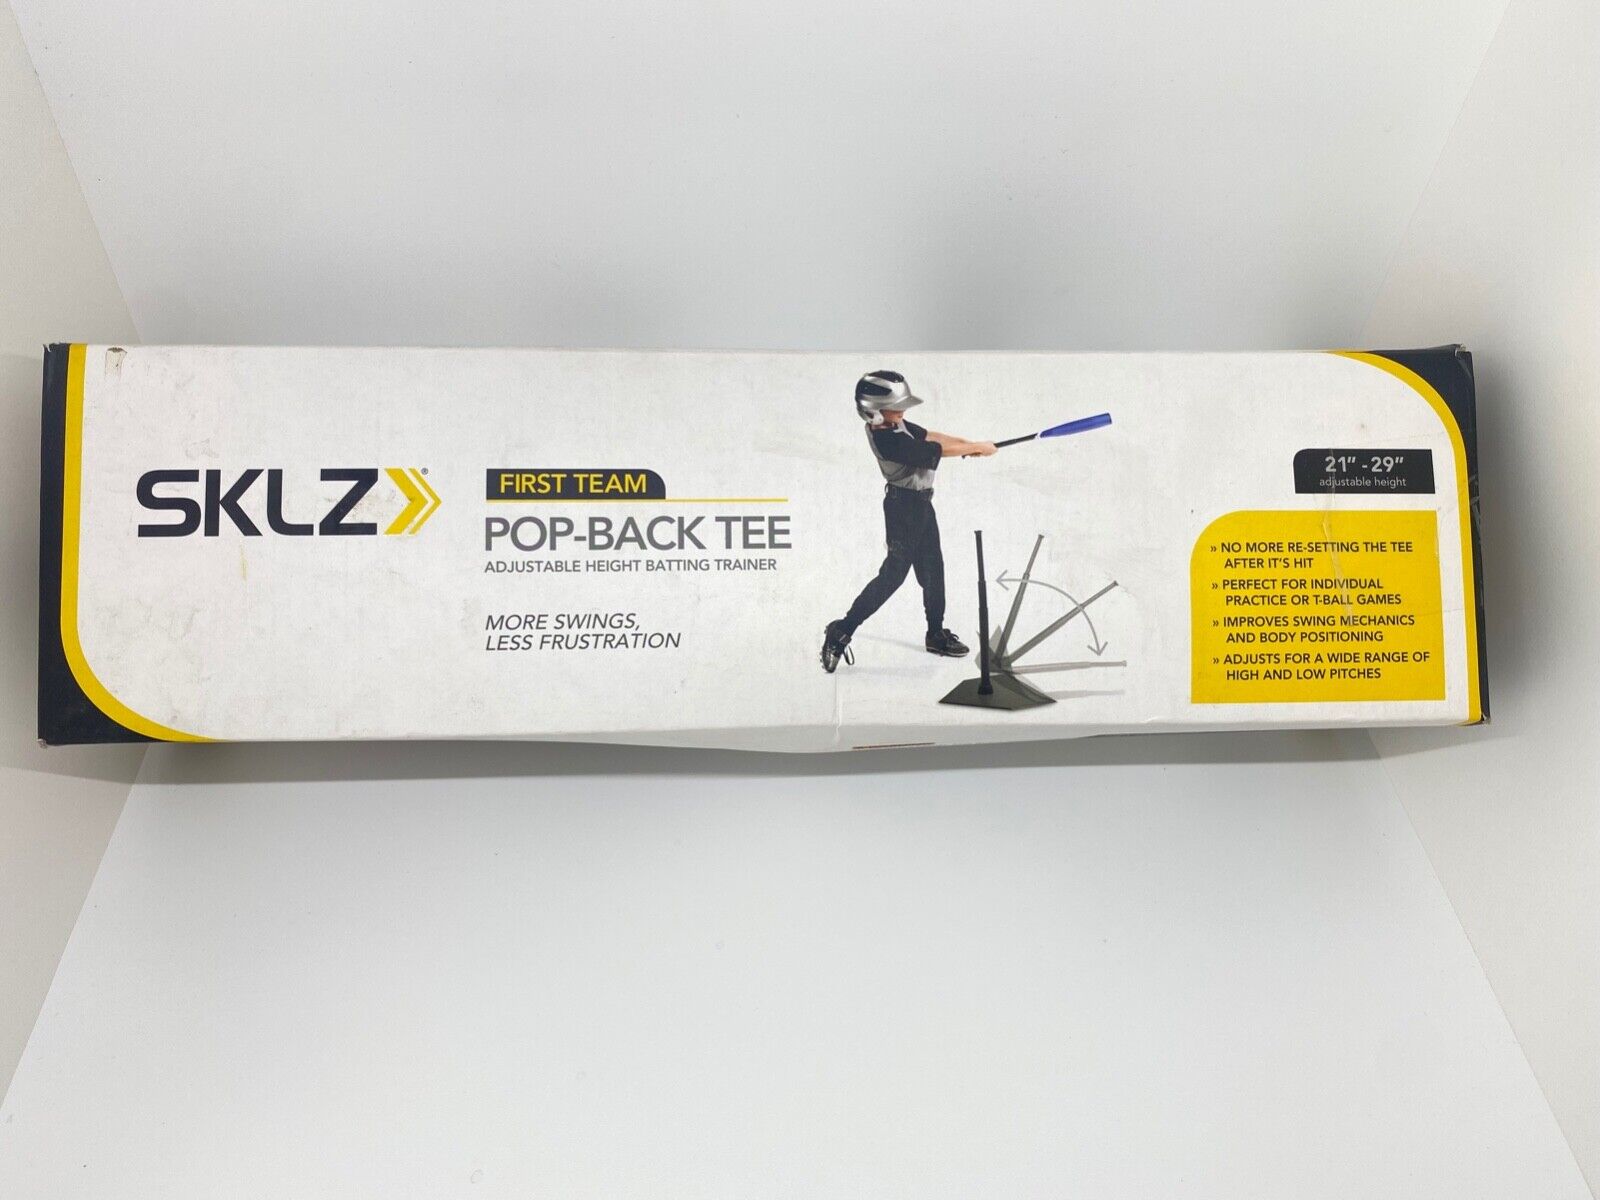 Sklz First Team Pop-back Tee Adjustable 21" To 29" Batting Trainer